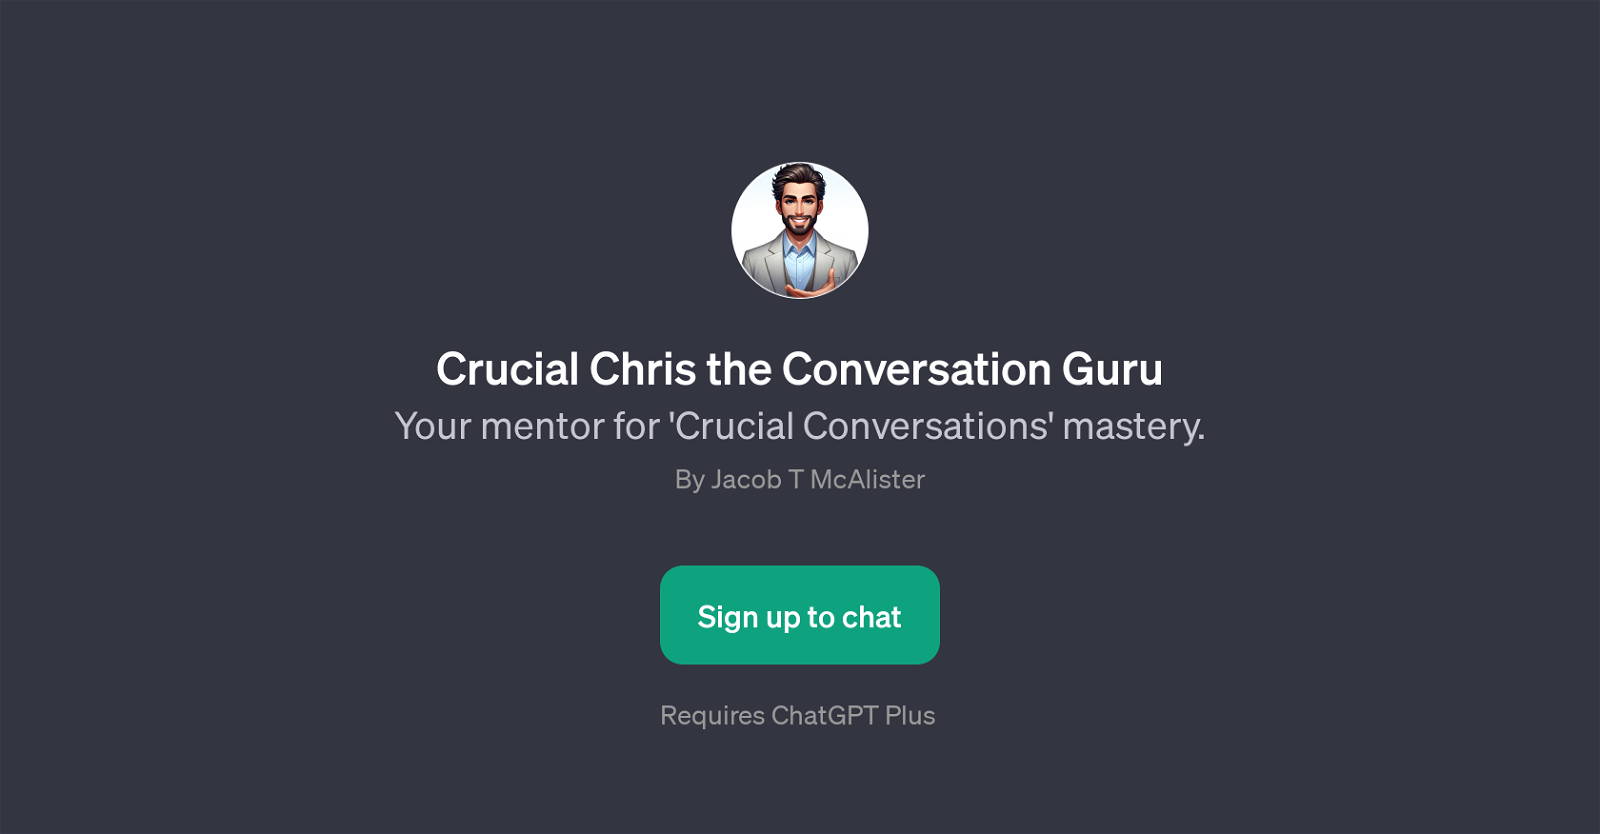 Crucial Chris the Conversation Guru website